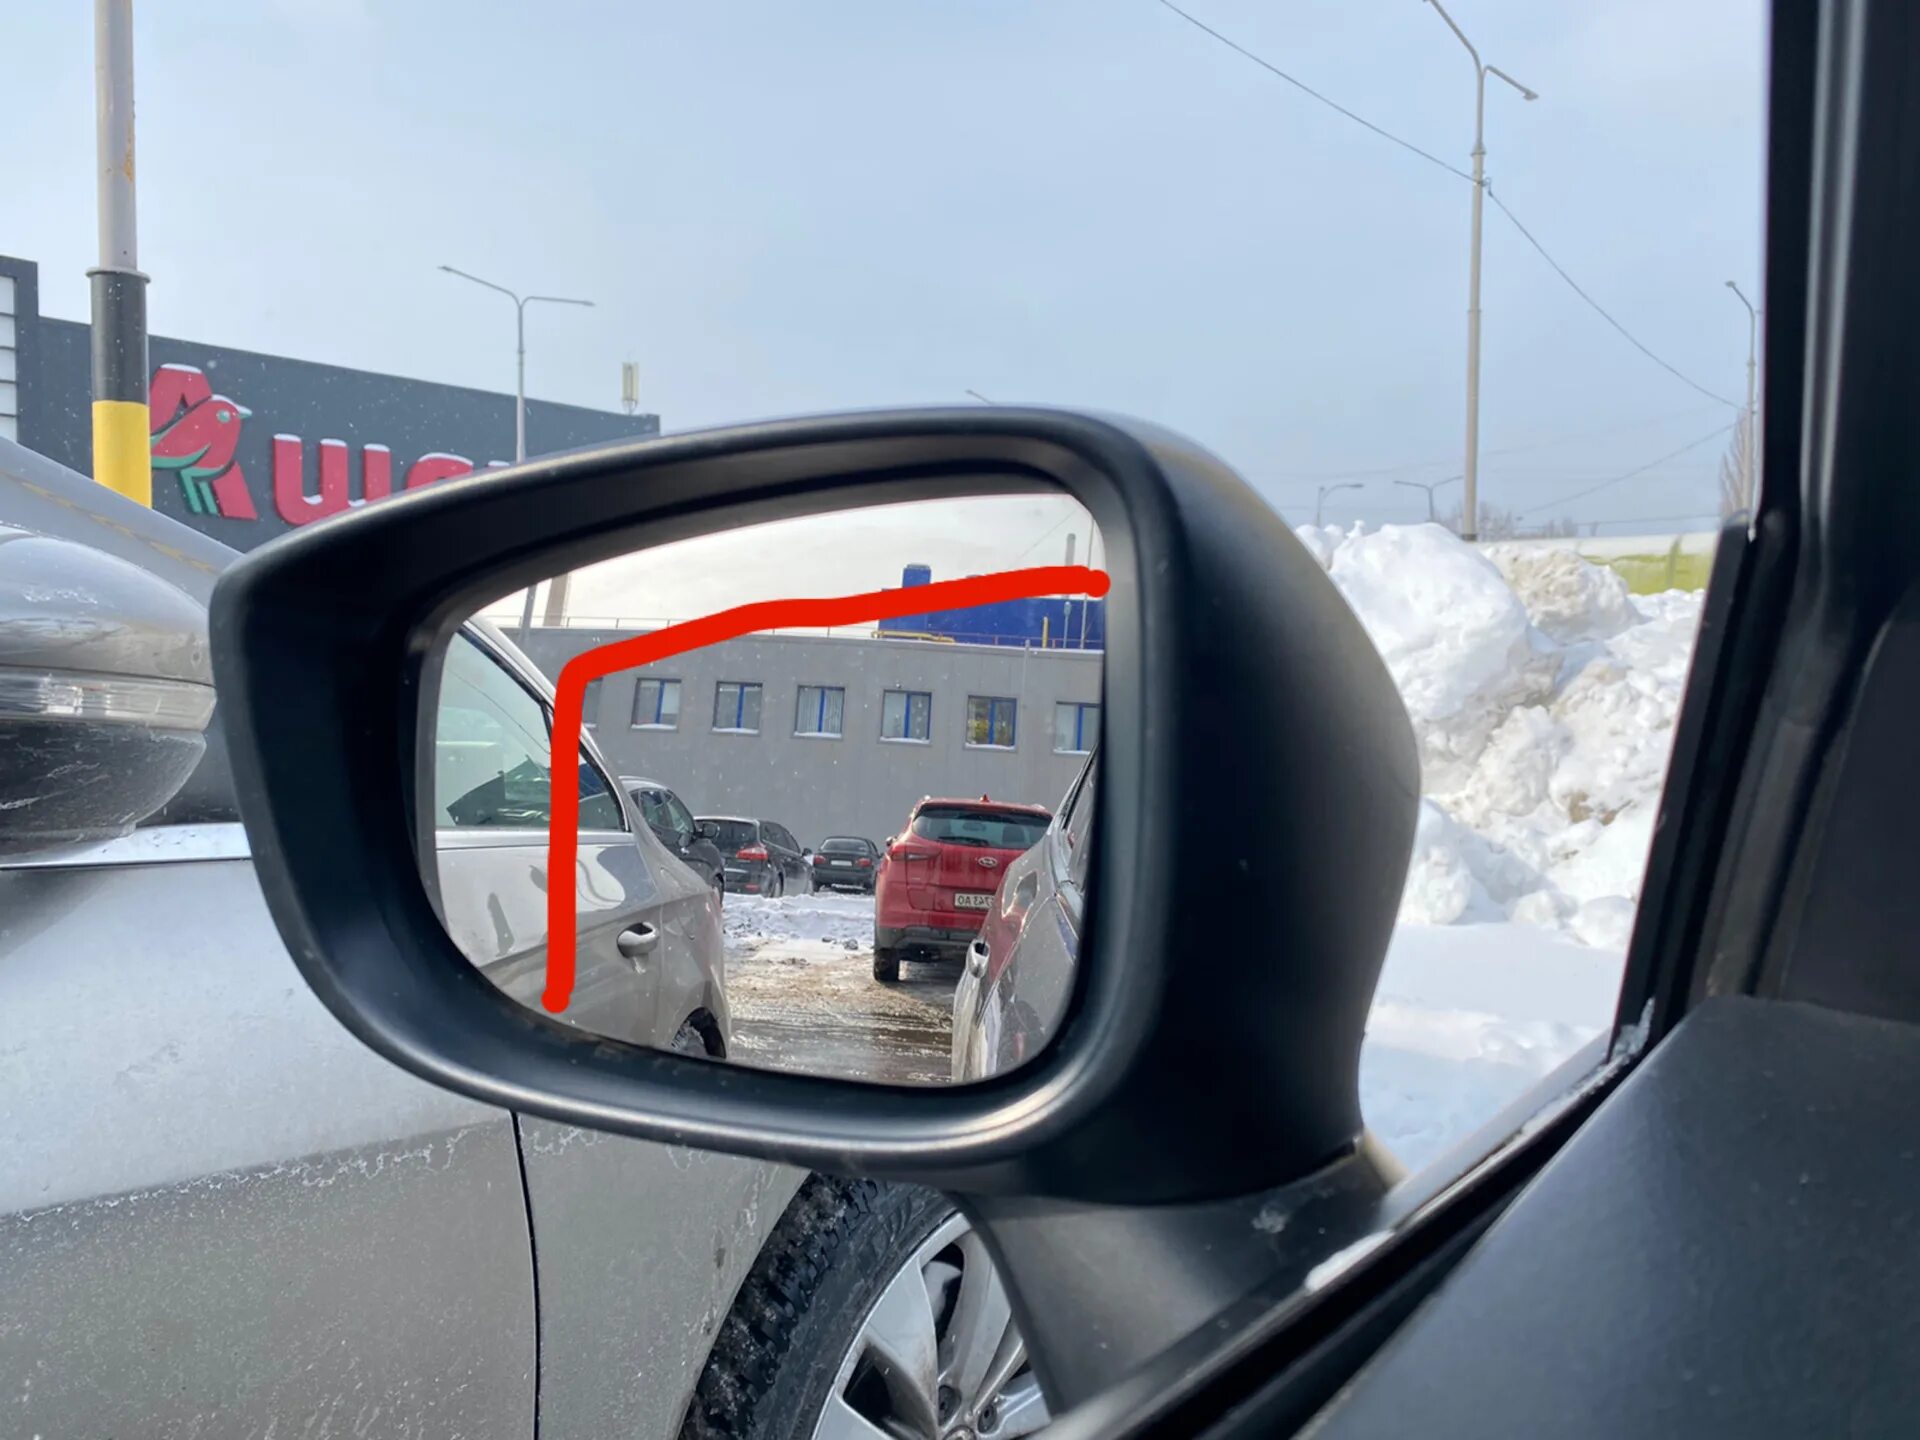 Водительское зеркало на JMC 23211k. Зеркало водительское nkr66e. Shacman зеркало водительское двойное. Пежо 308 универсал 2019 зеркало водителя.